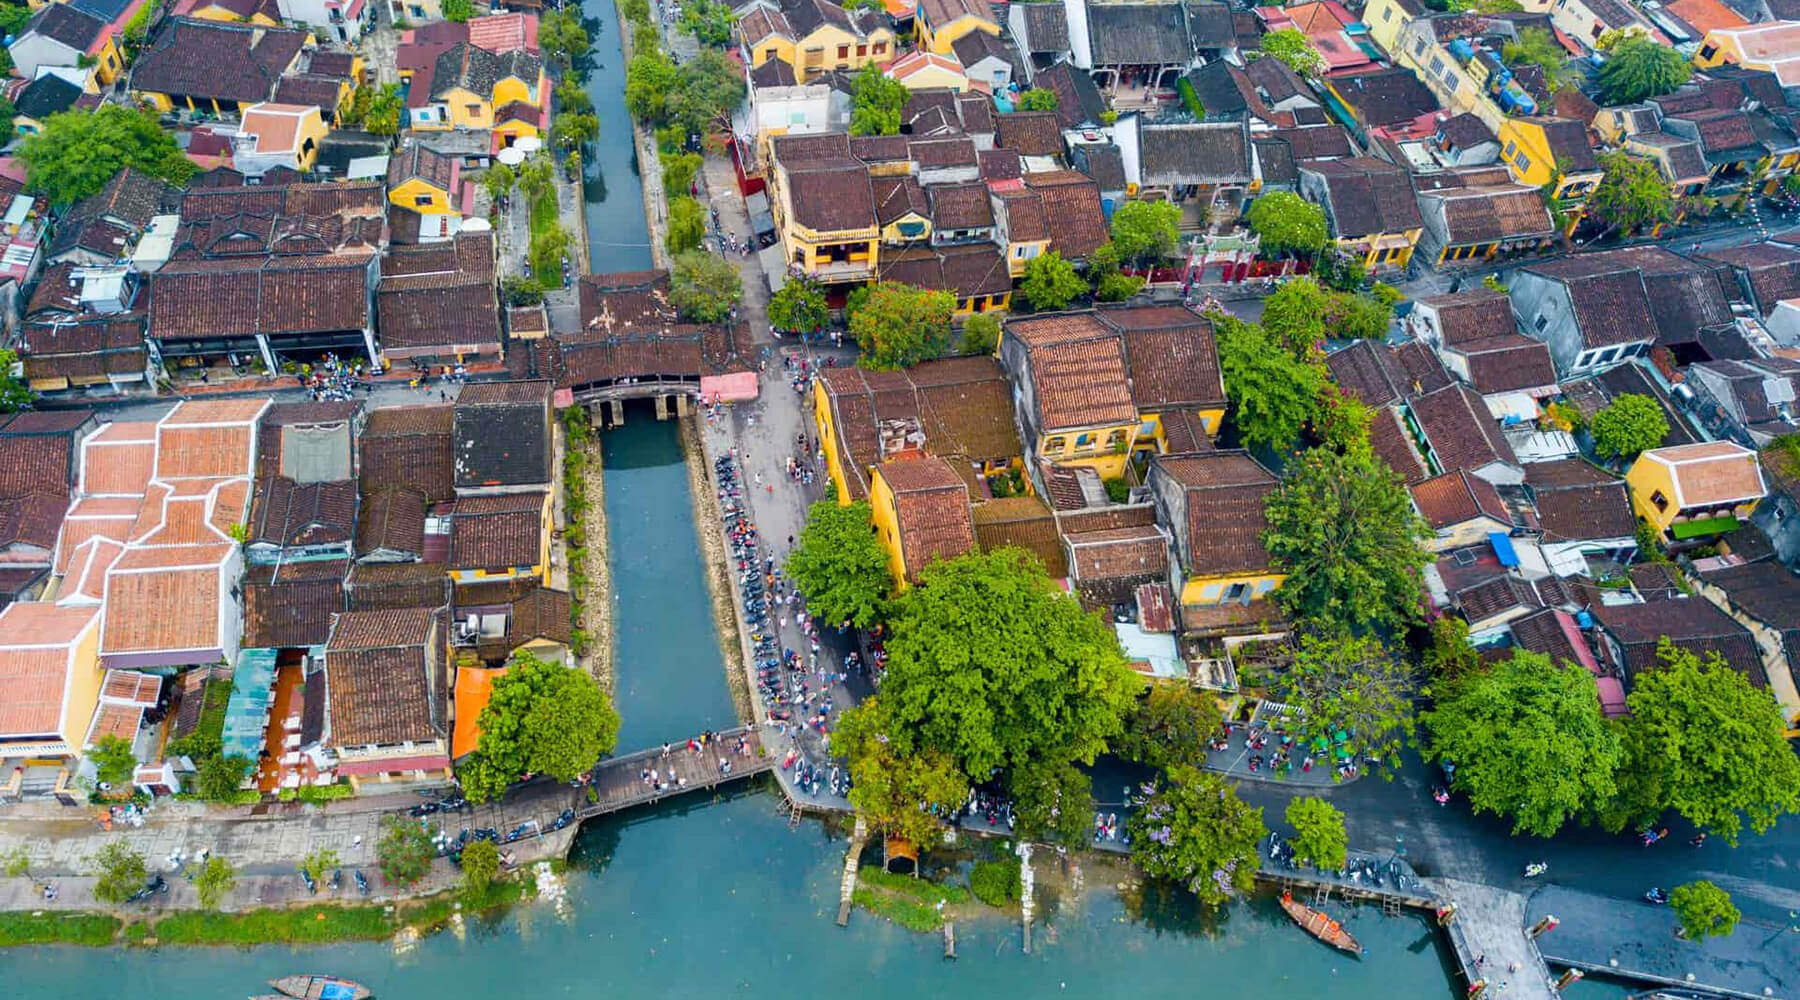 Hoi An Ancient Town, Go Vietnam Tours